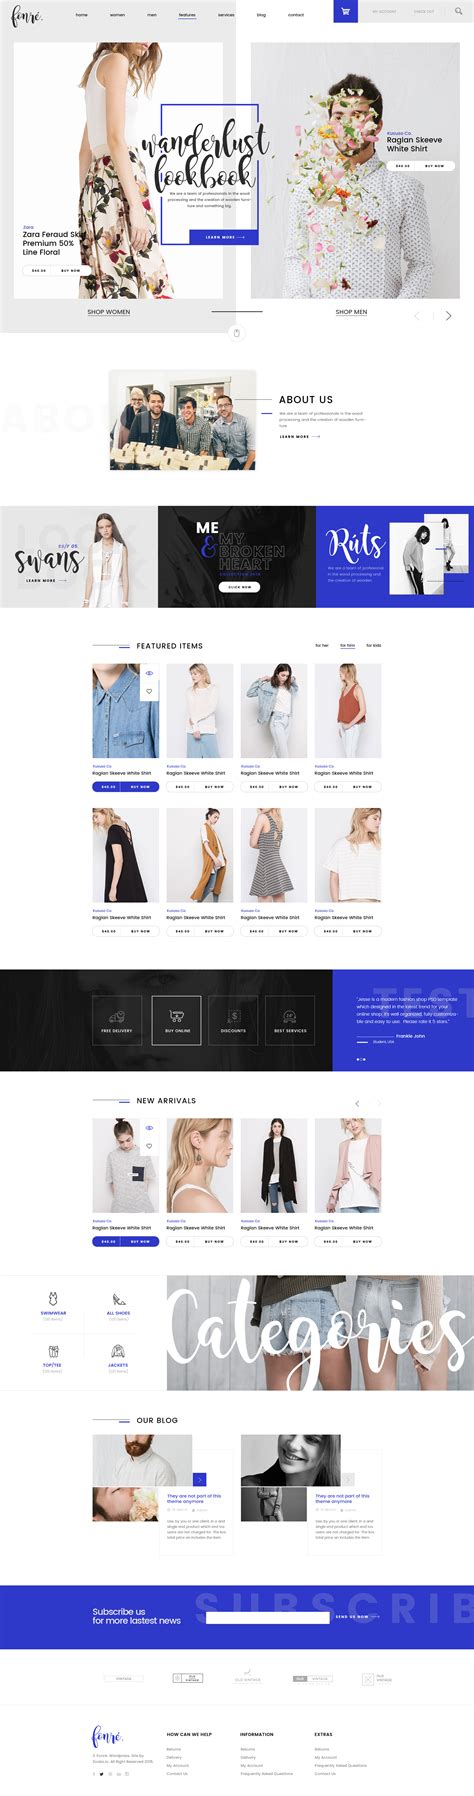 服装行业品牌宣传网站模板